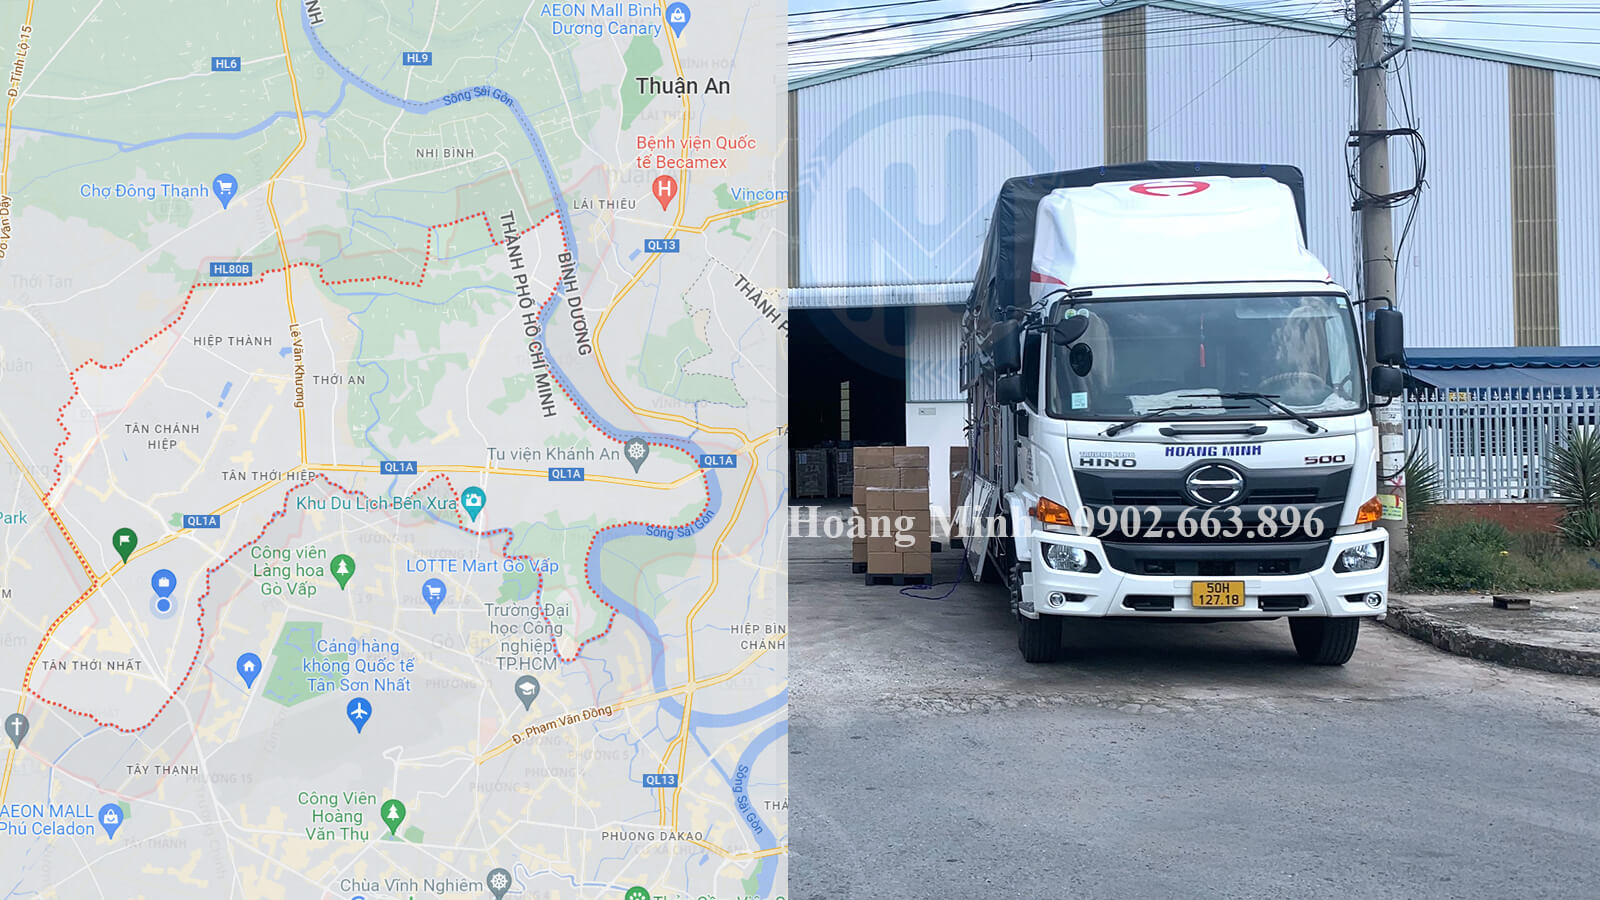 Hoàng Minh cho thuê xe tải chở hàng quận 12 uy tín